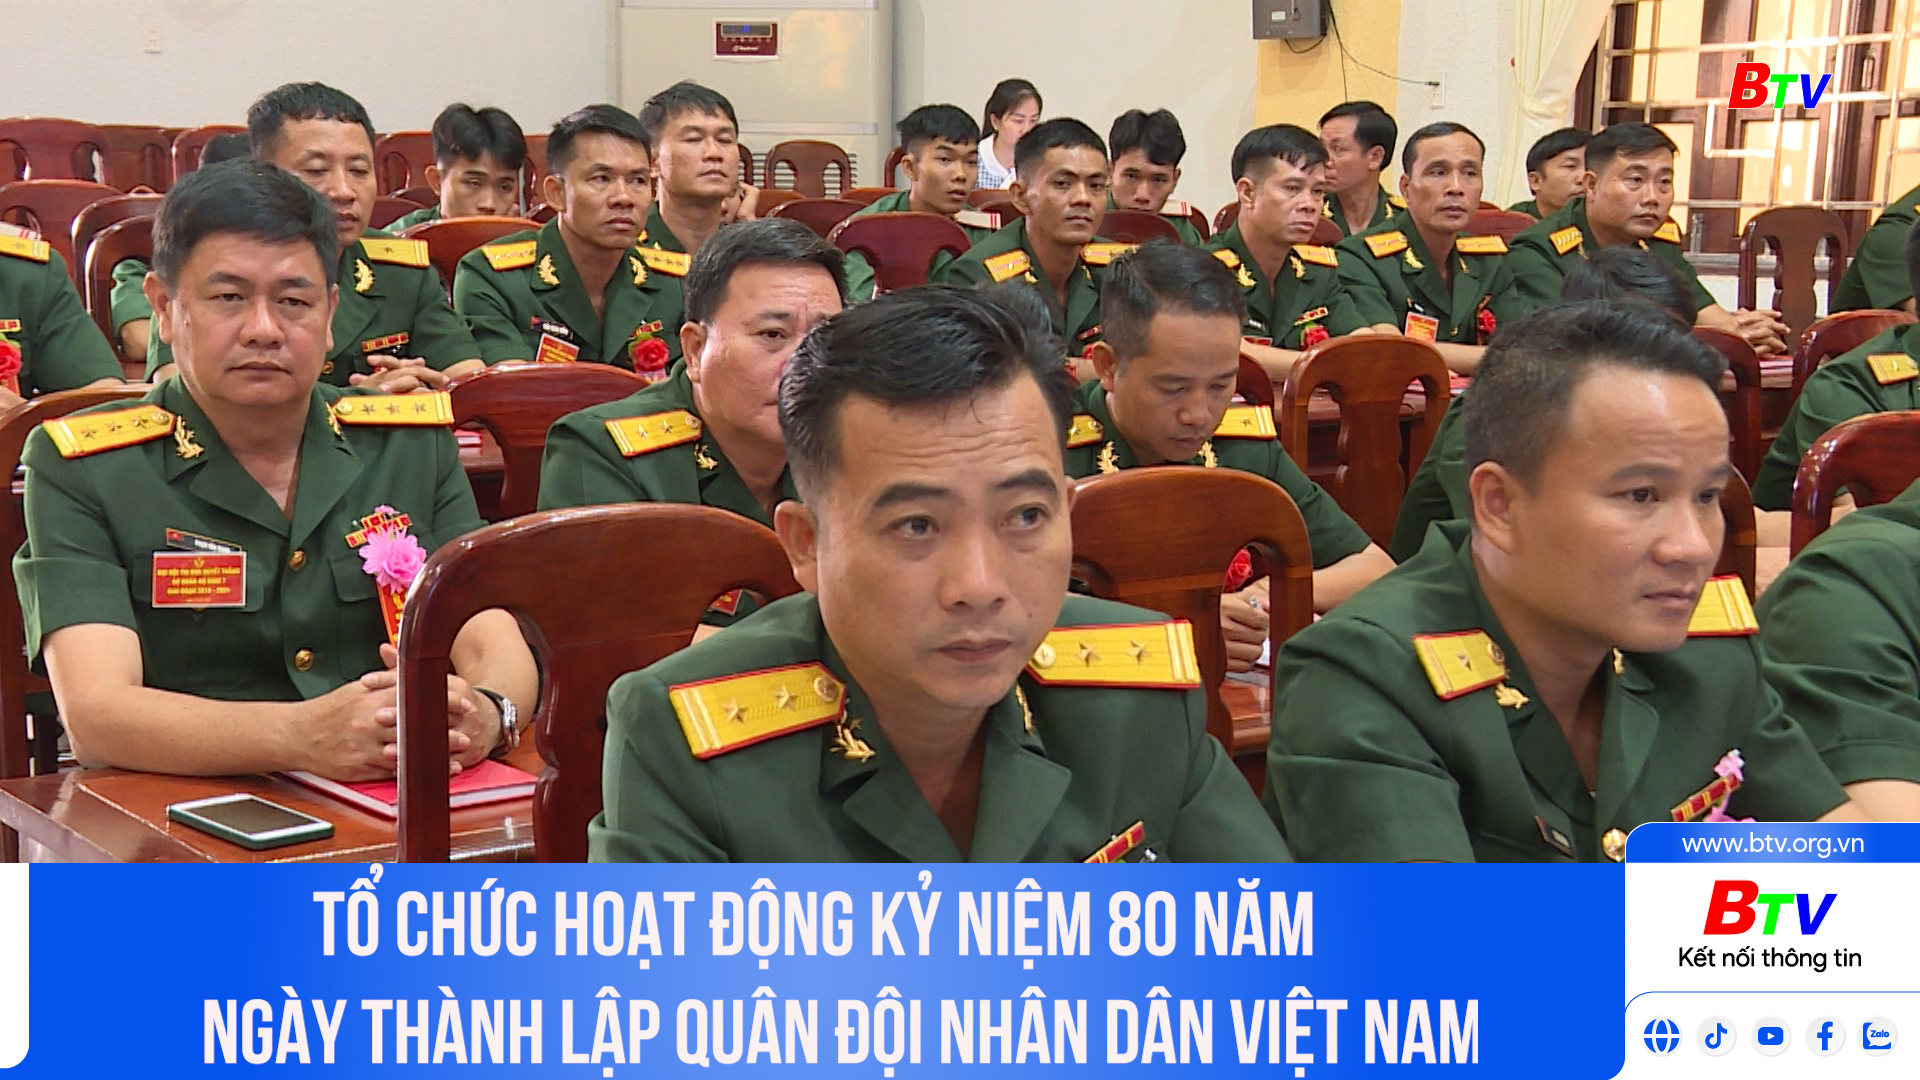 Tổ chức hoạt động kỷ niệm 80 năm Ngày thành lập Quân đội nhân dân Việt Nam